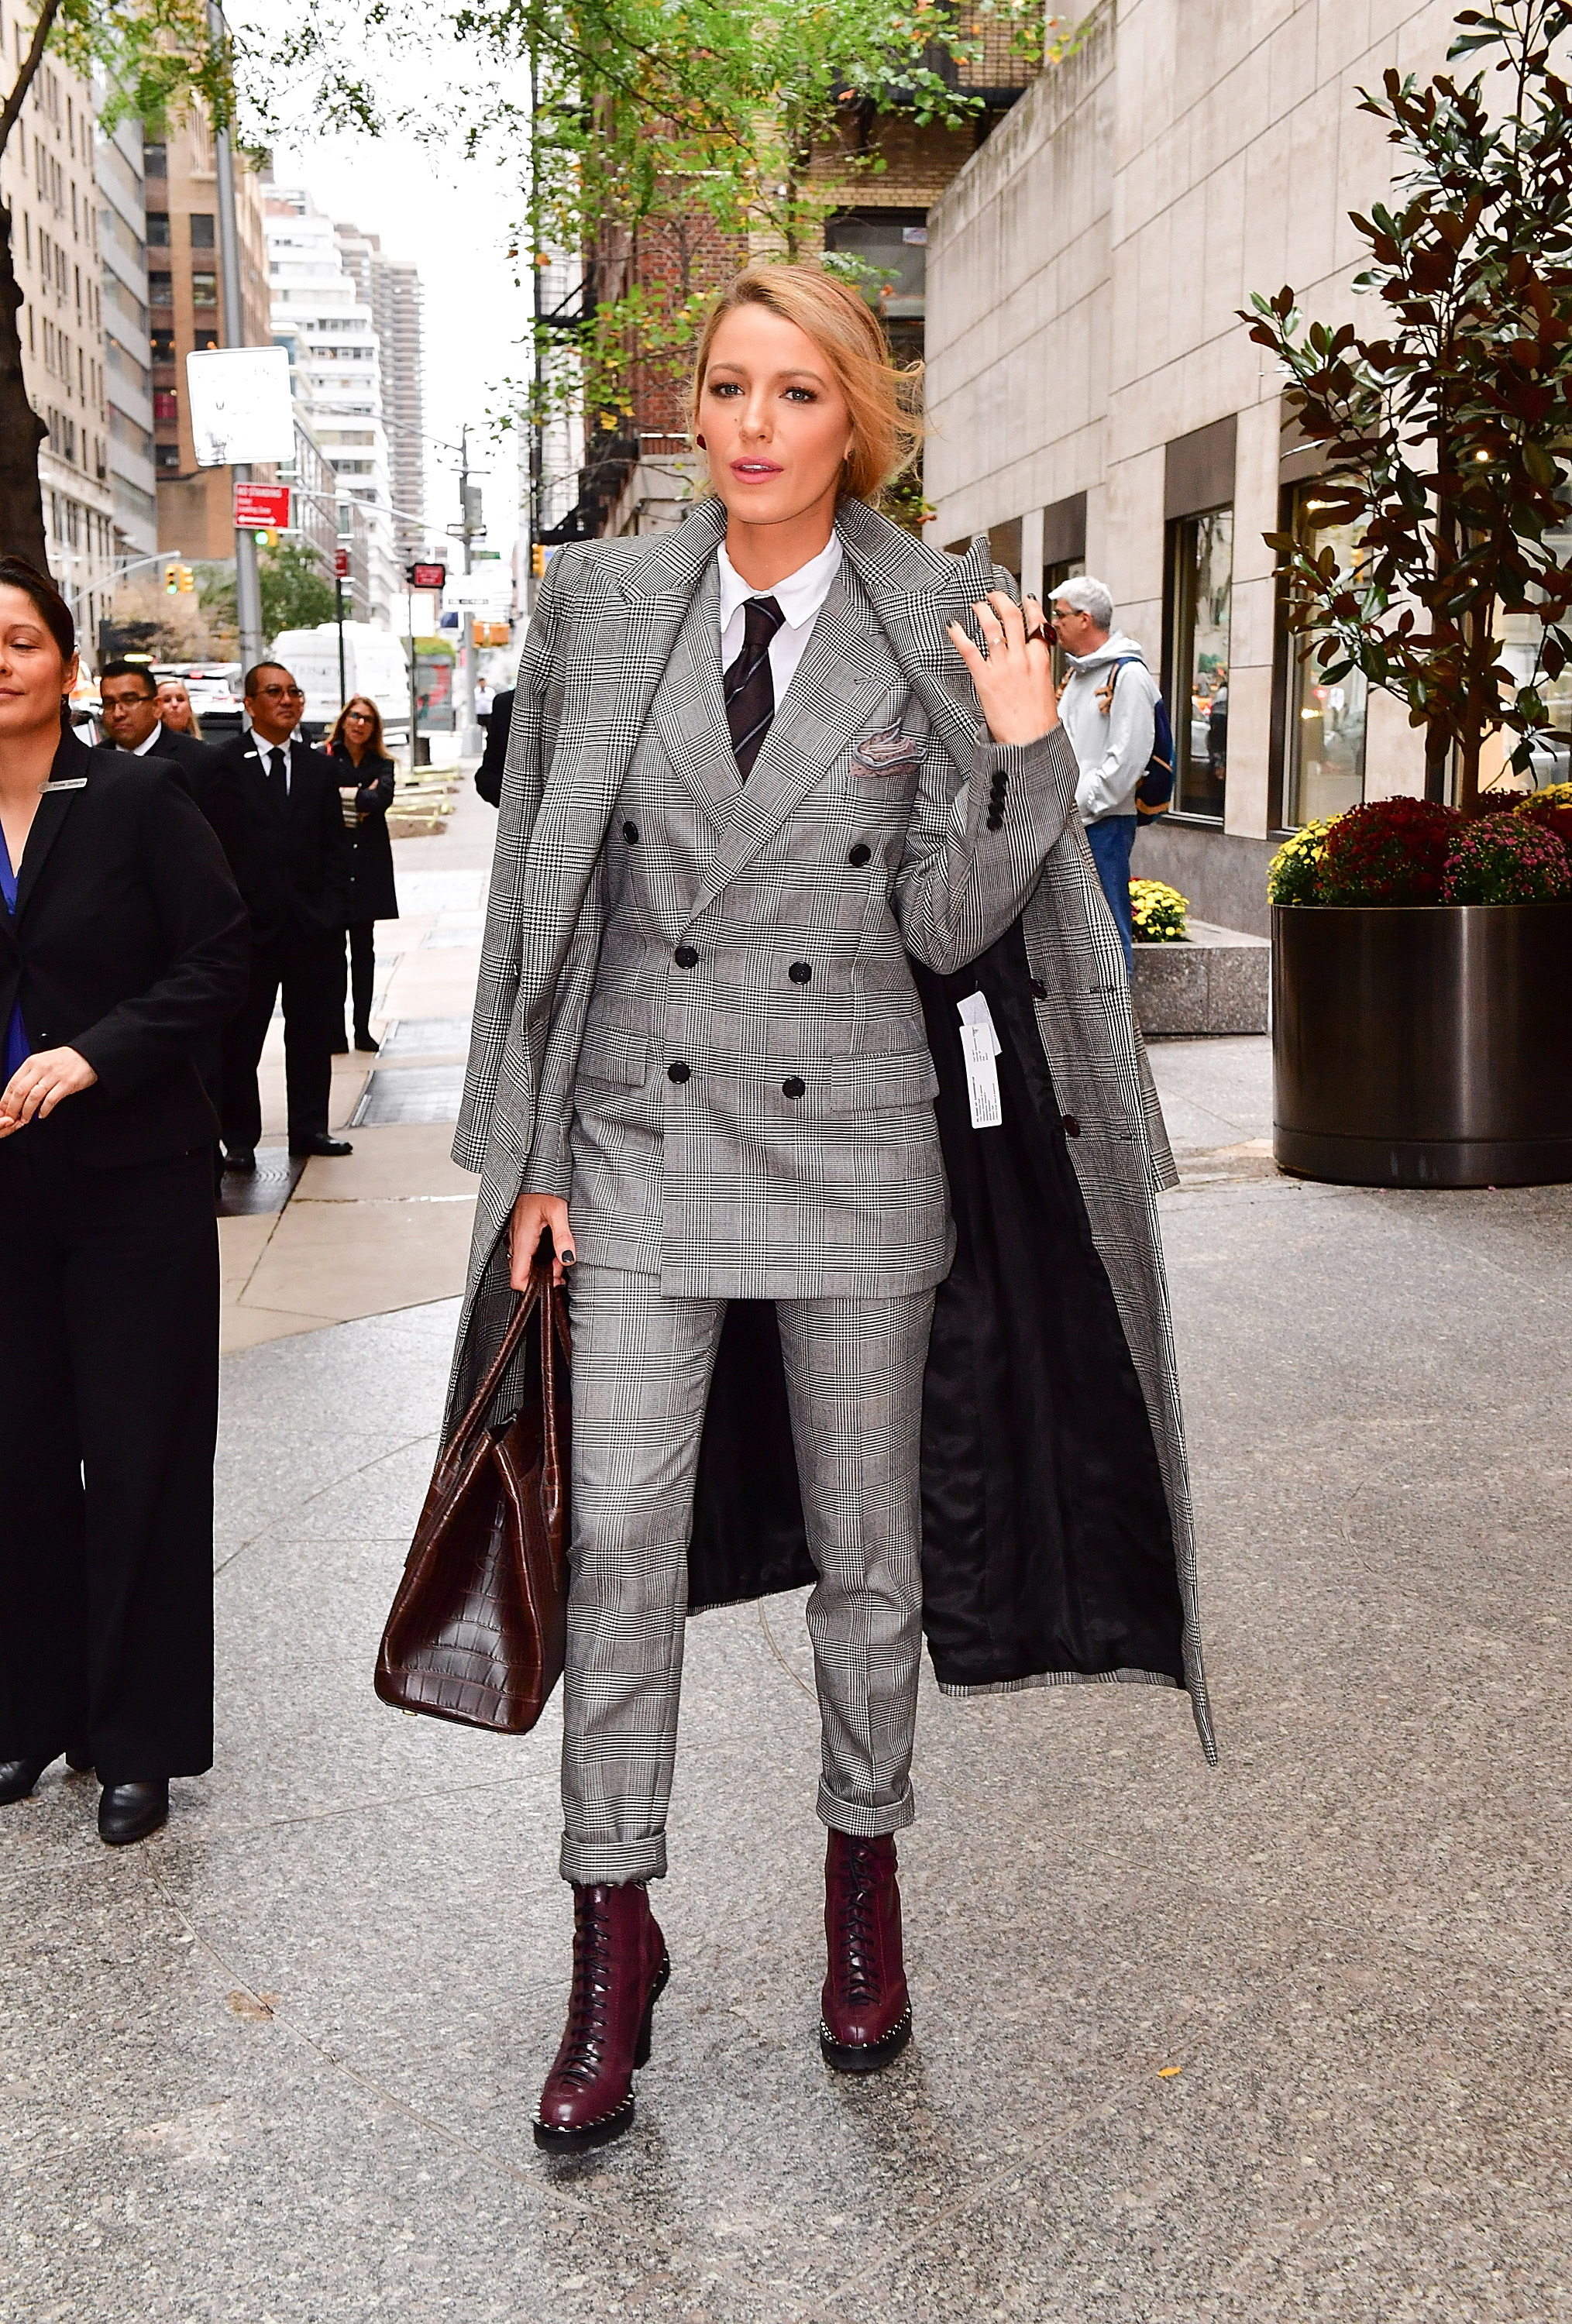 Zendaya is Officially a Louis Vuitton Ambassador - Fashionista